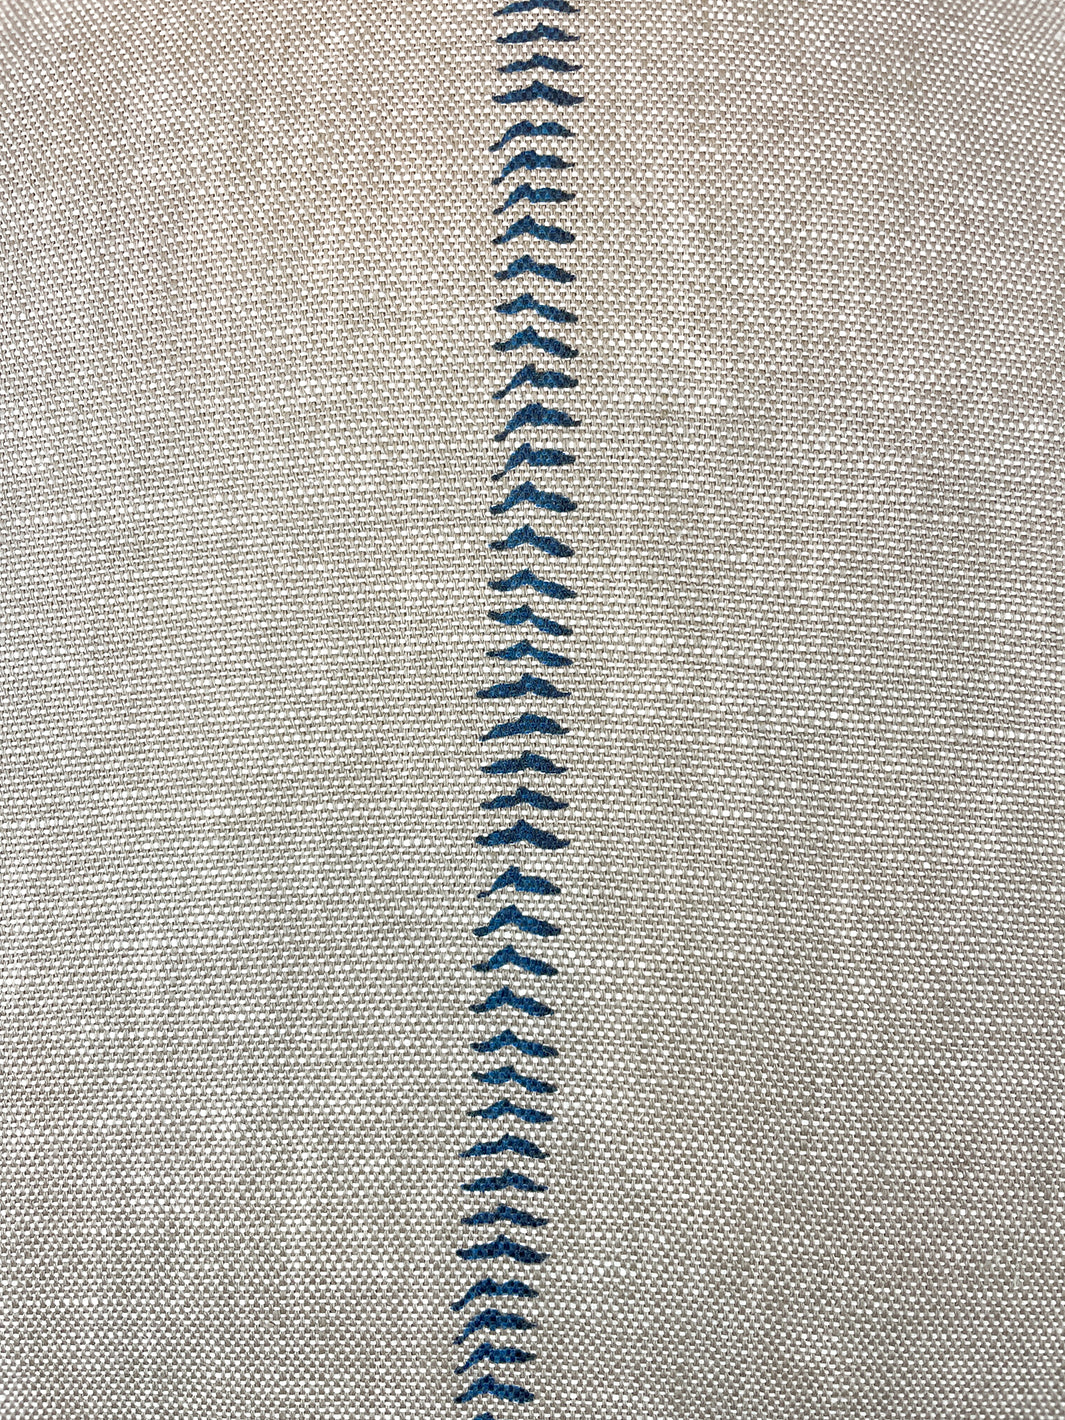 'Baseball Stitch' Throw Pillow - Blue on Flax Linen